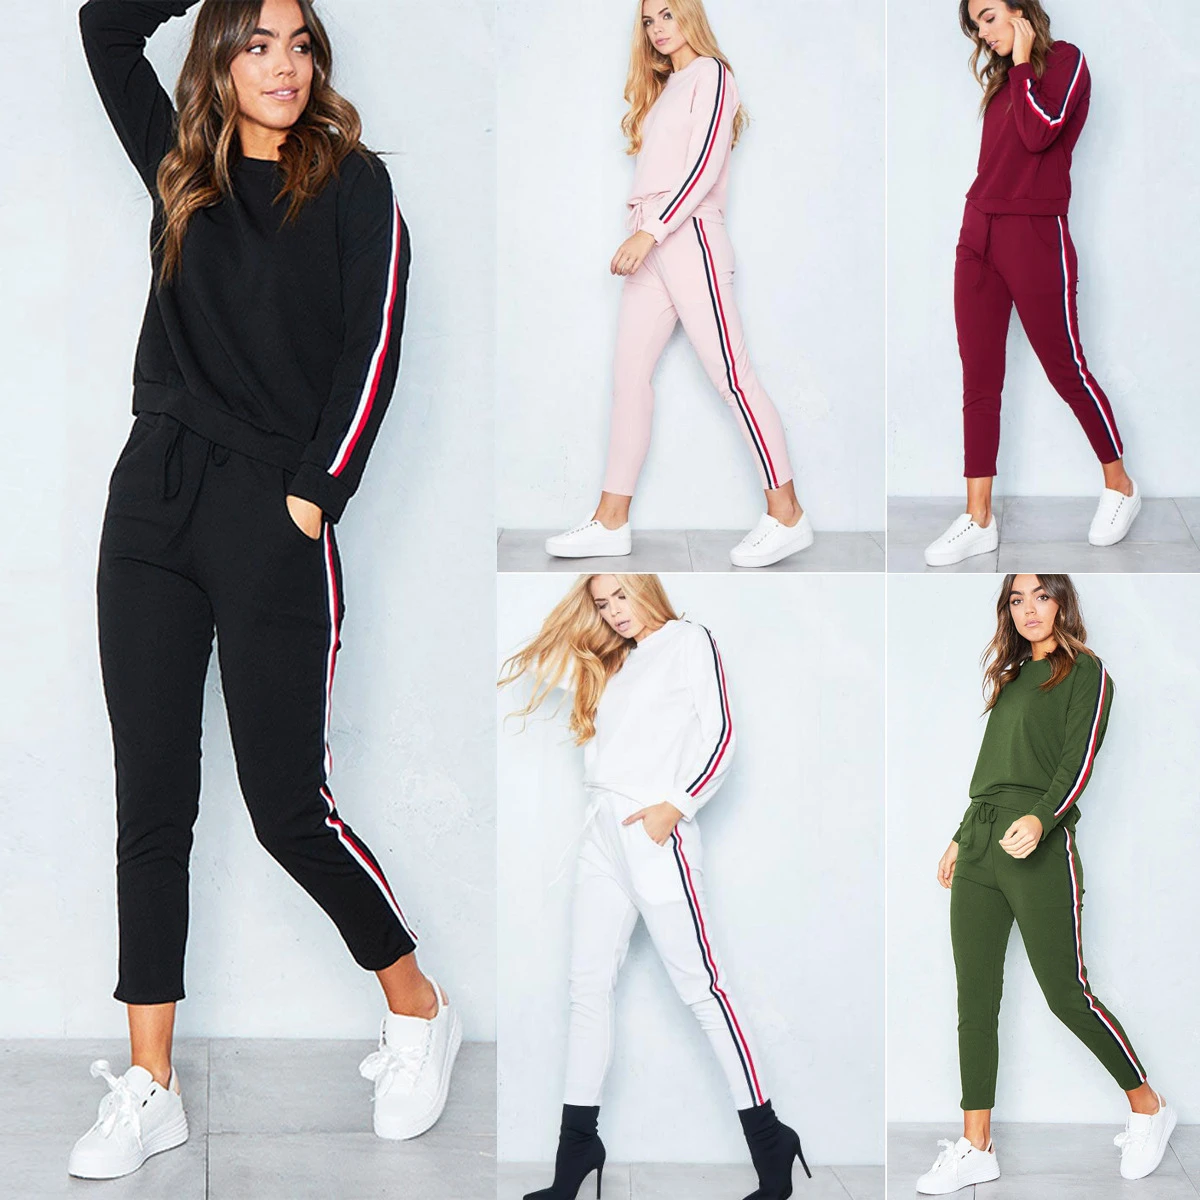 Chándal 2 piezas conjunto de las mujeres 2018 Hoodies Crop Top sudadera + Stripe pantalones encapuchados 2 mujeres ropa Mujer|Conjuntos de mujer| - AliExpress